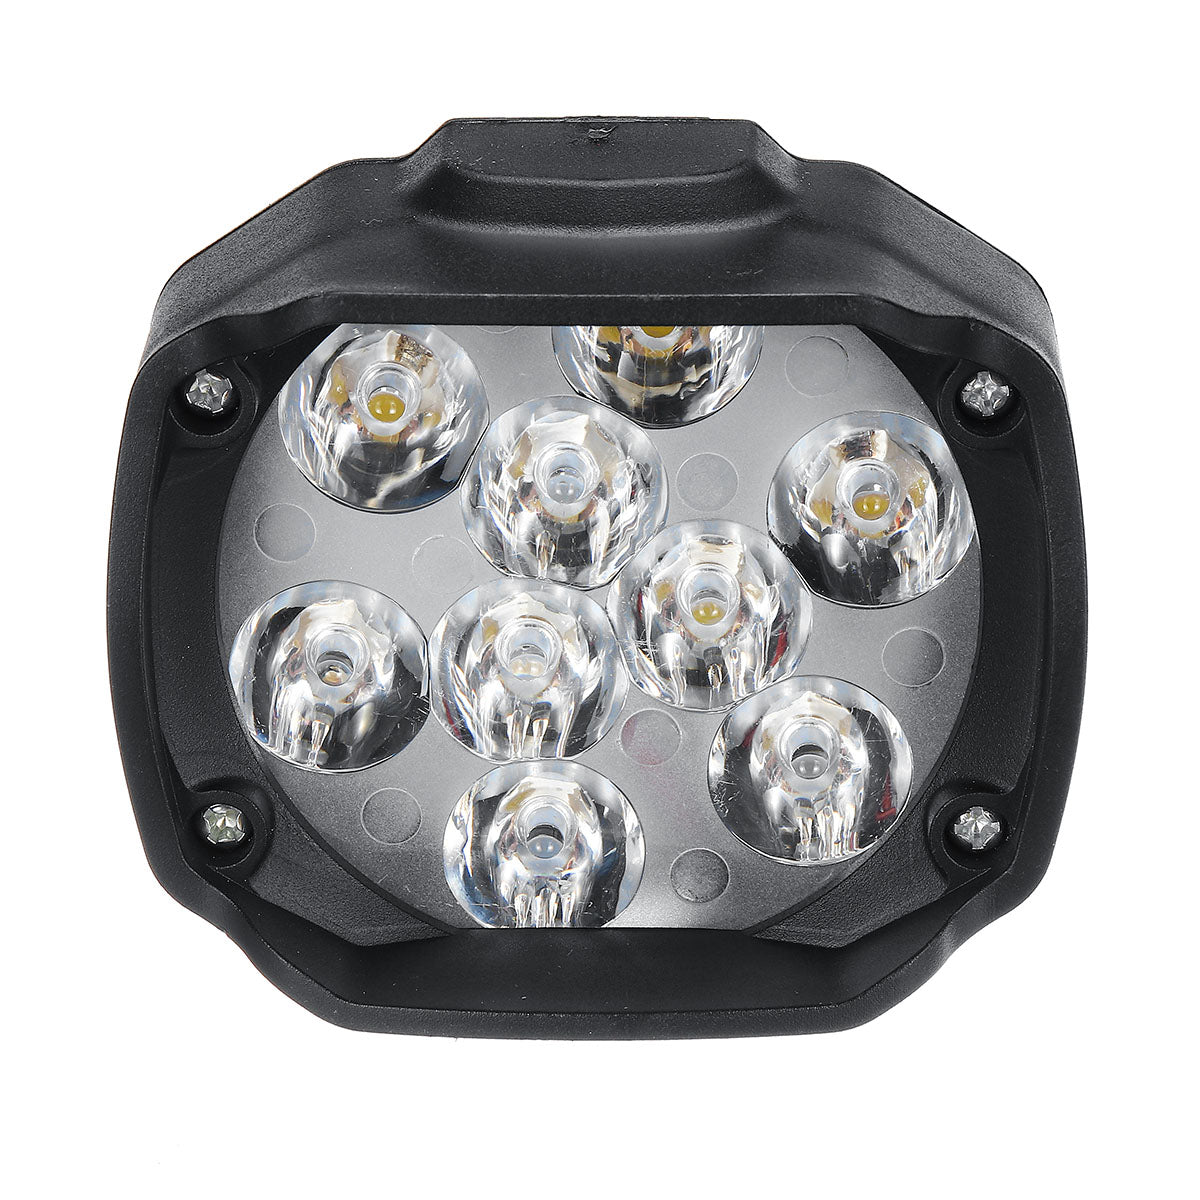 Gray 12V10W 1000LM 9 LED Super Bright Motorcycle Headlight Bulb Work Light Fog Driving Spot Lamp Night Headlamp For UTV ATV